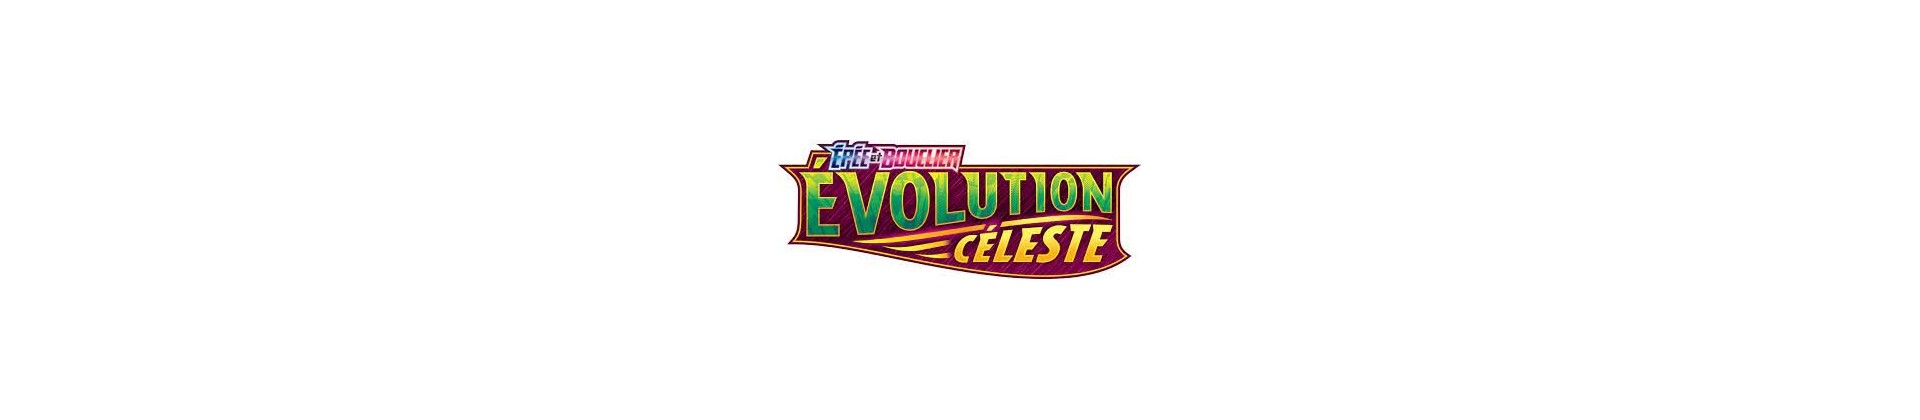 EB07 - Evolution Céleste